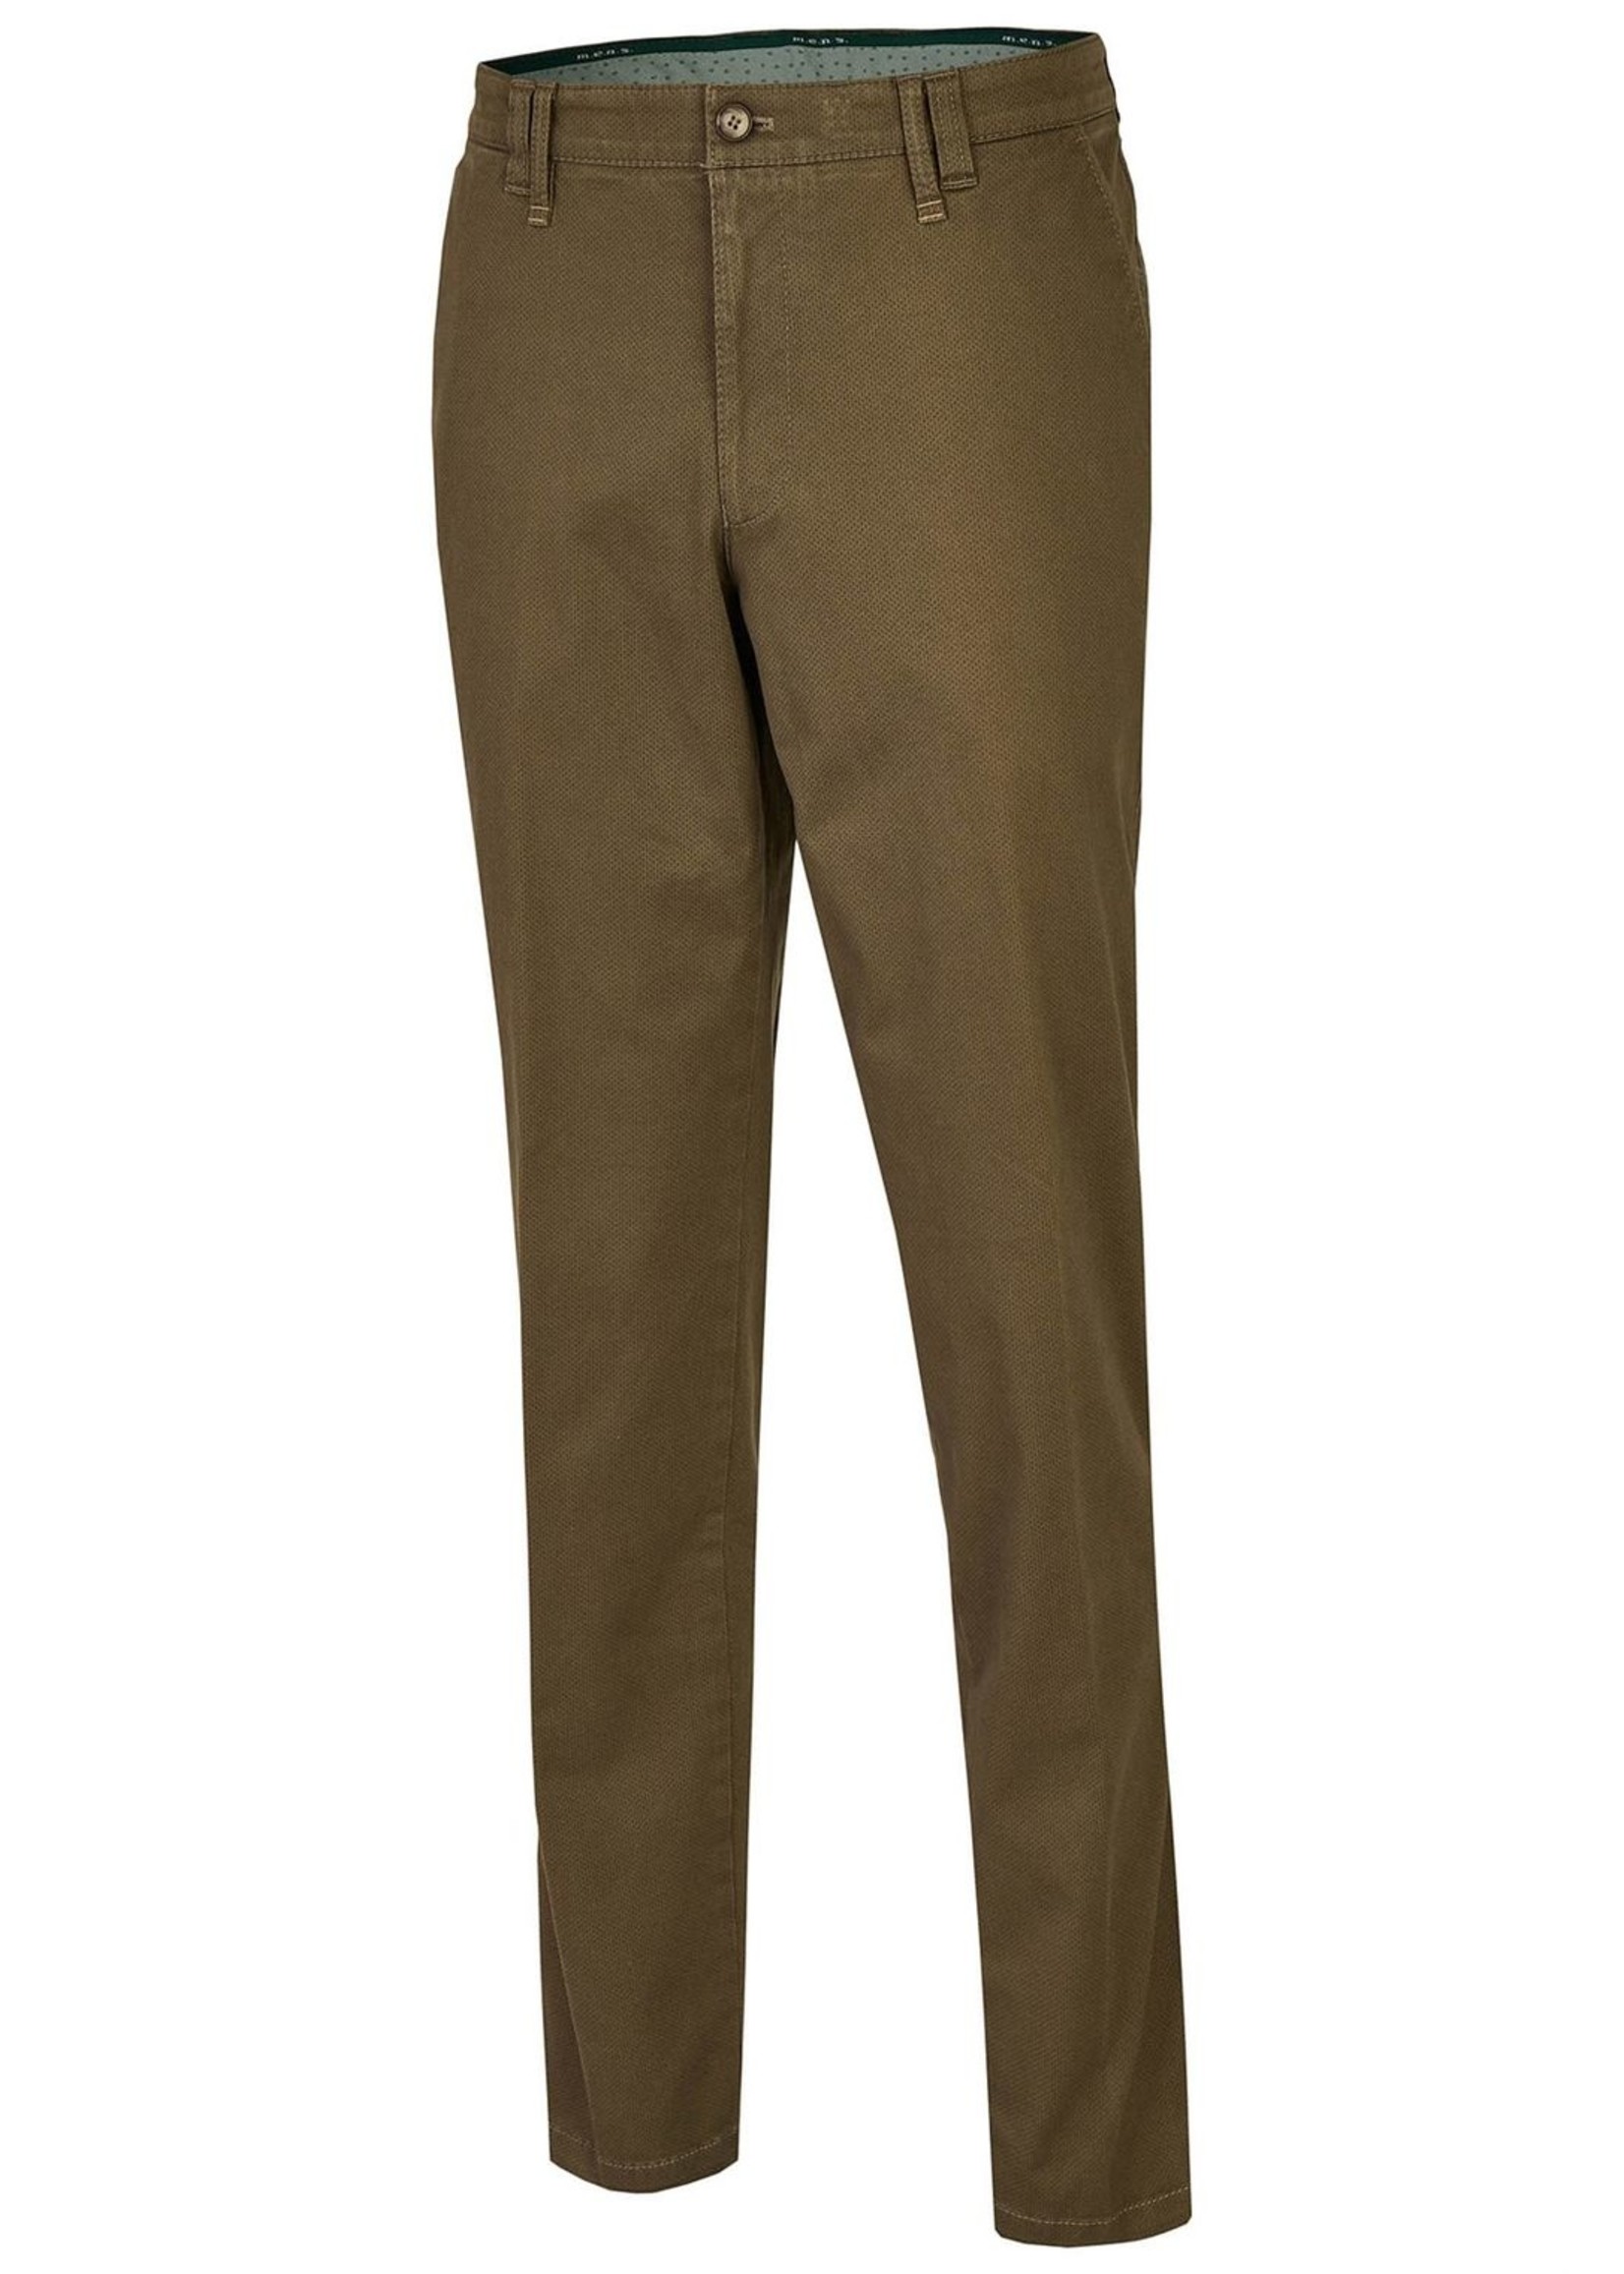 M.E.N.S. Pantalon en coton brossé style Meran-4157